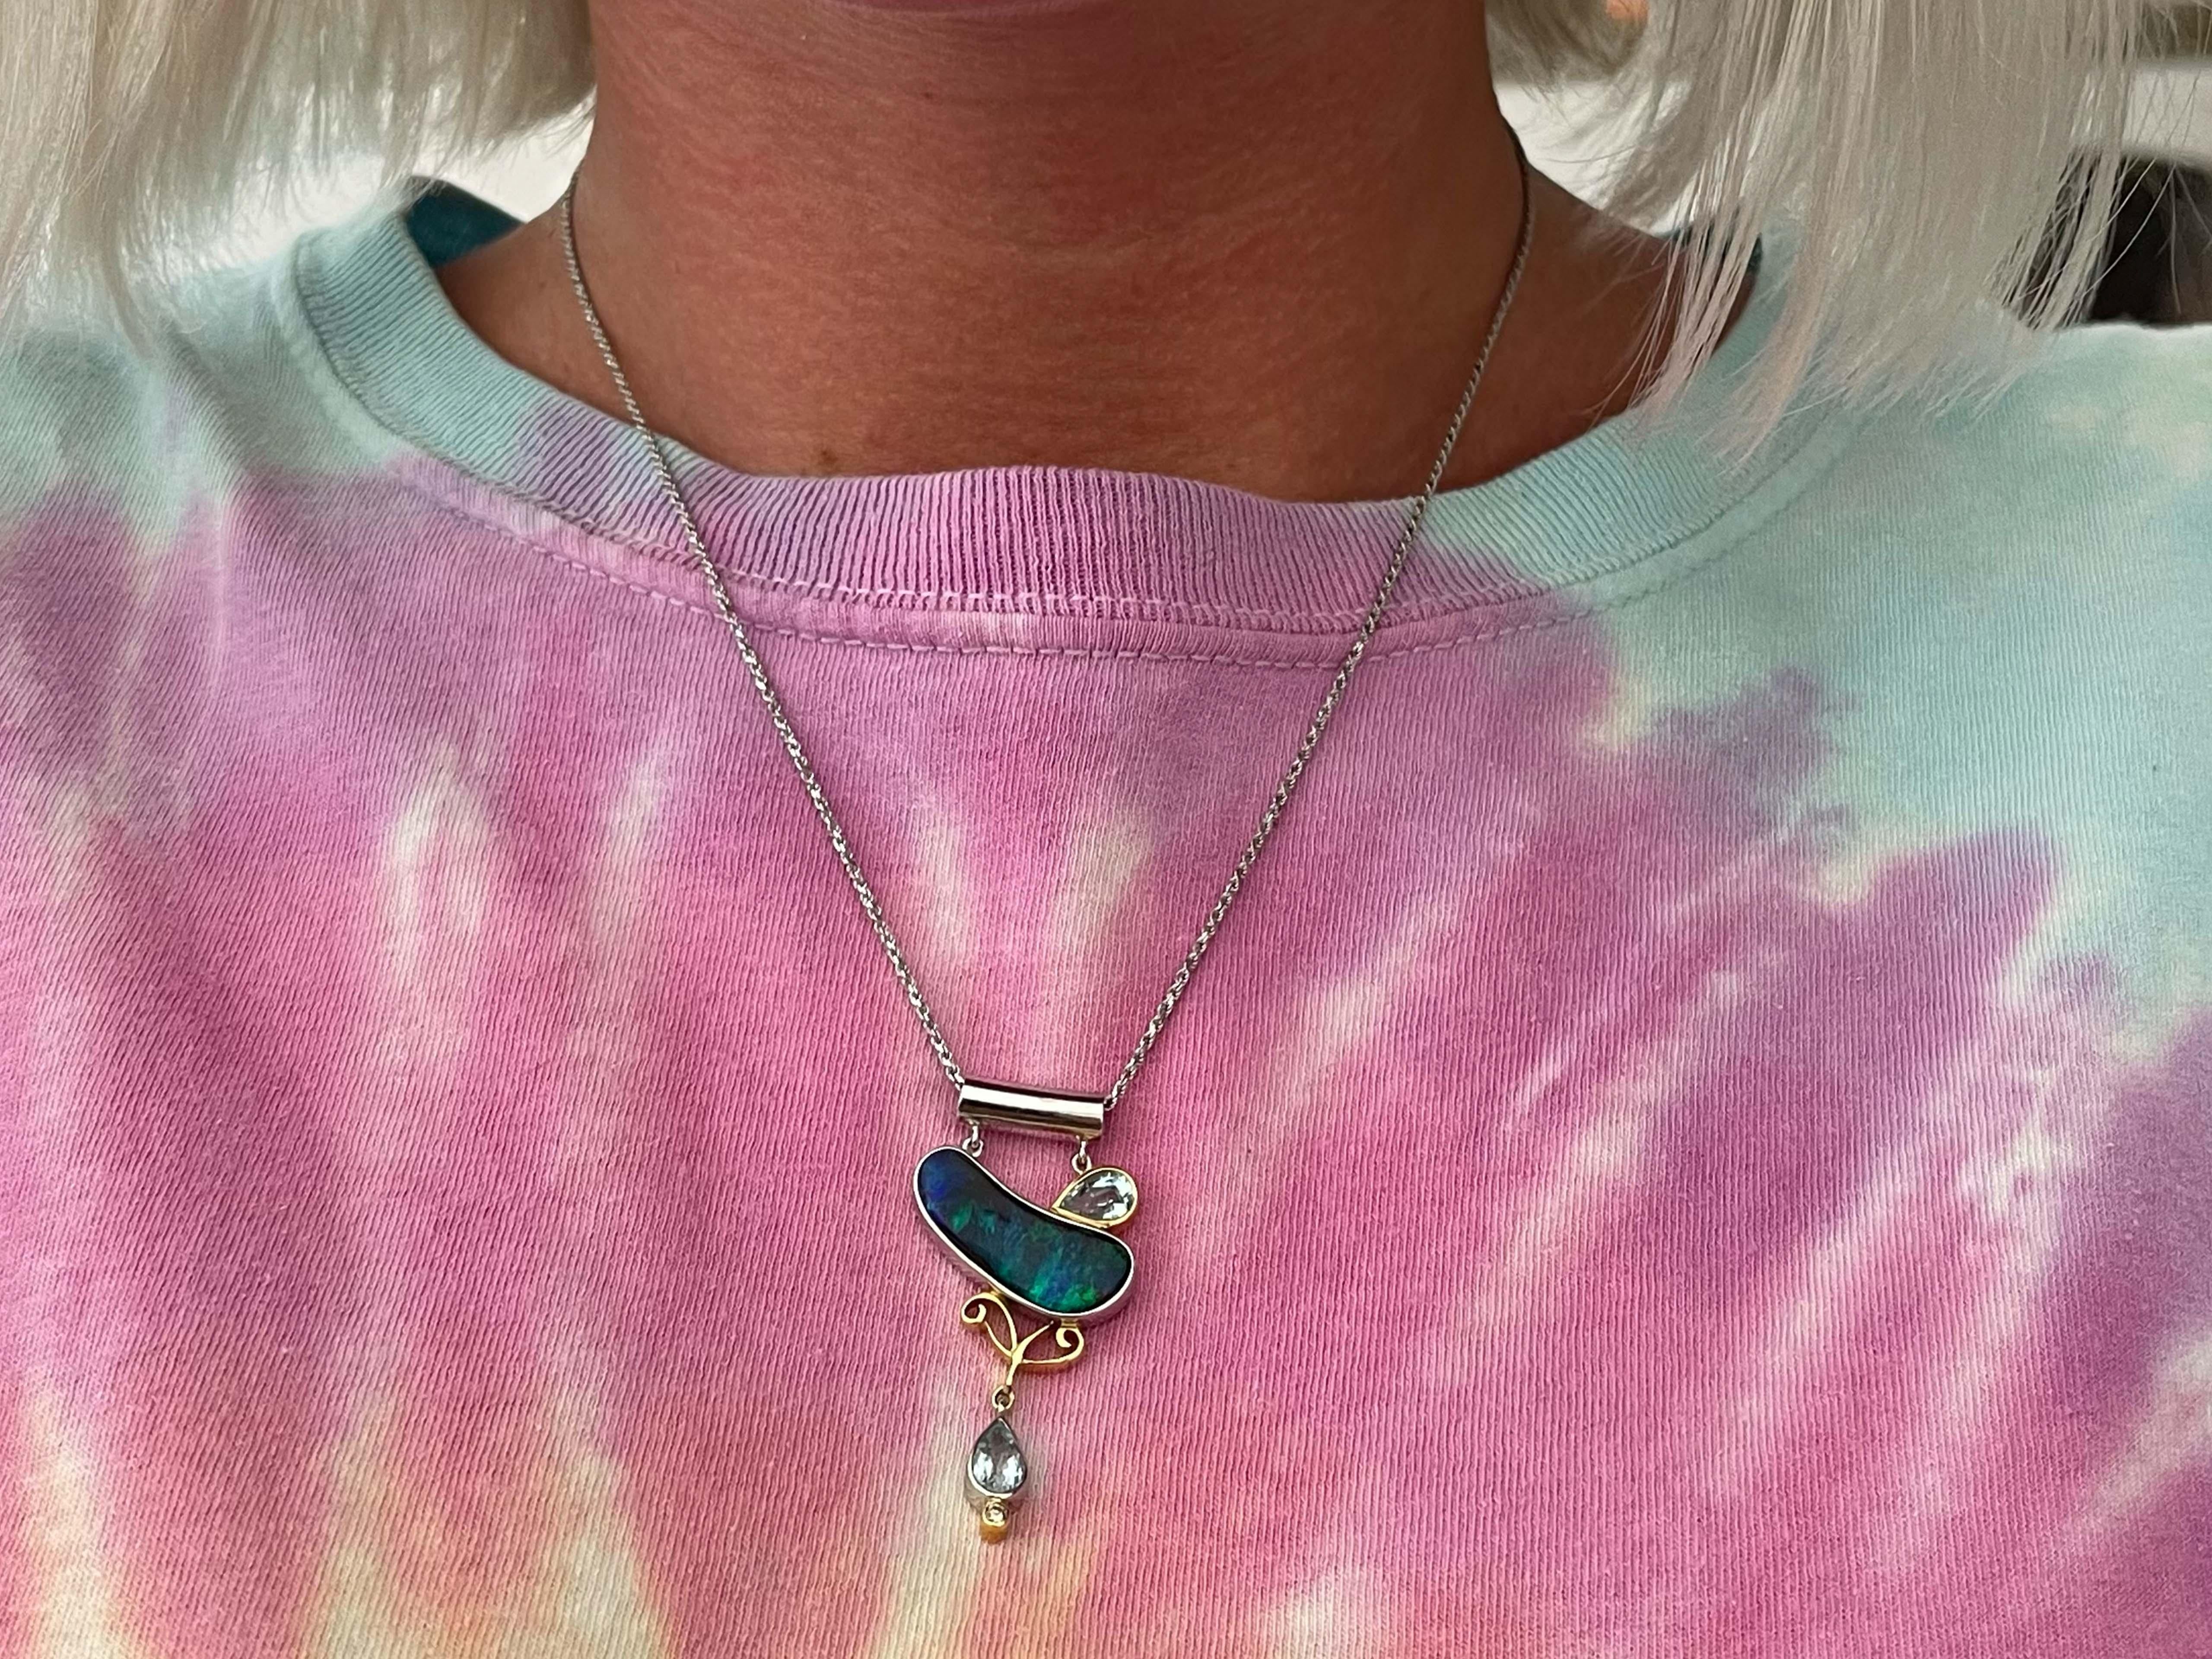 Ce bijou est unique en son genre. En son centre se trouve une superbe opale bleu-vert, qui ressemble aux aurores boréales de l'Alaska, un phénomène vraiment rare. Cette opale est tout à fait semblable dans son jeu de couleurs rares et étonnantes,